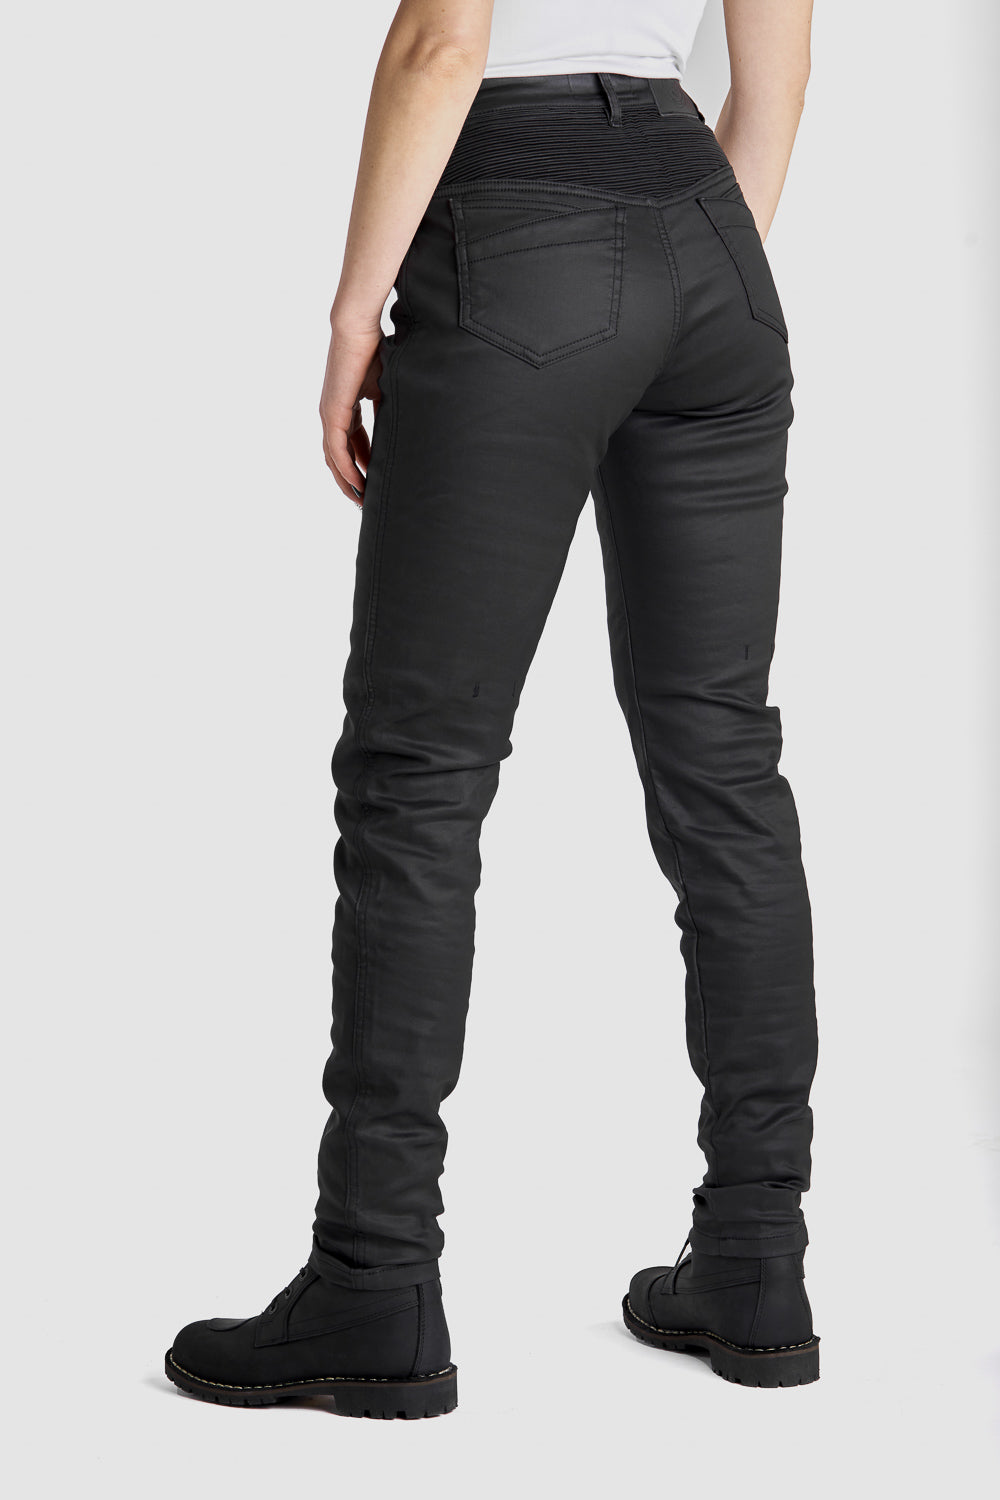 Motorcycle Jeans for Women - Black Slim-Fit Kevlar® LORICA KEV 02